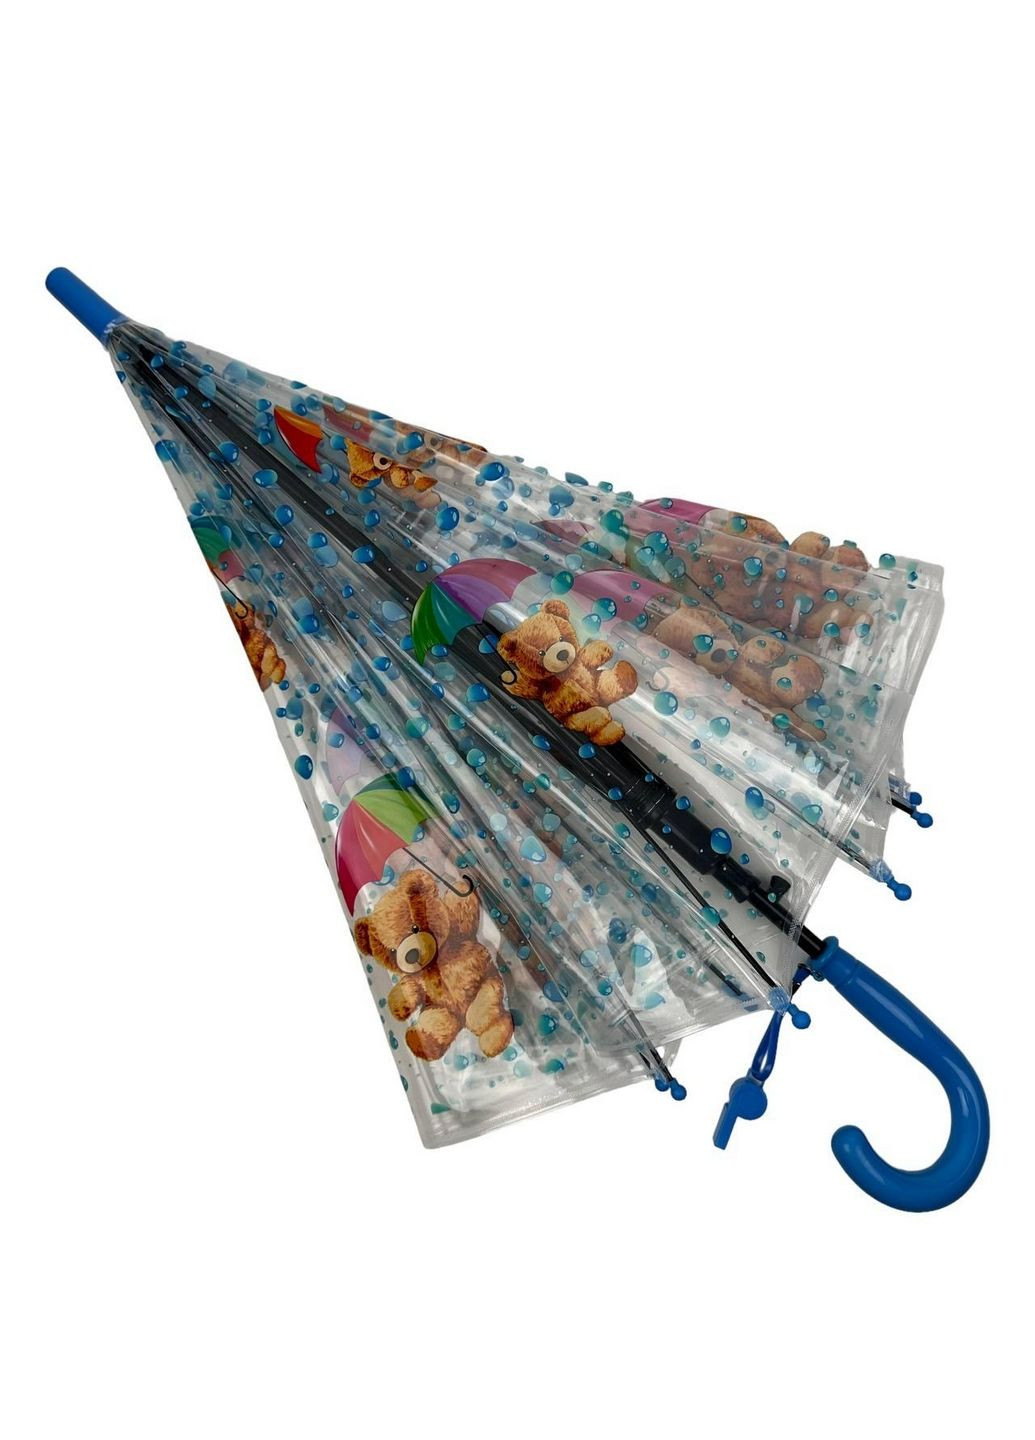 Прозрачный детский зонт трость полуавтомат Rain (279315270)